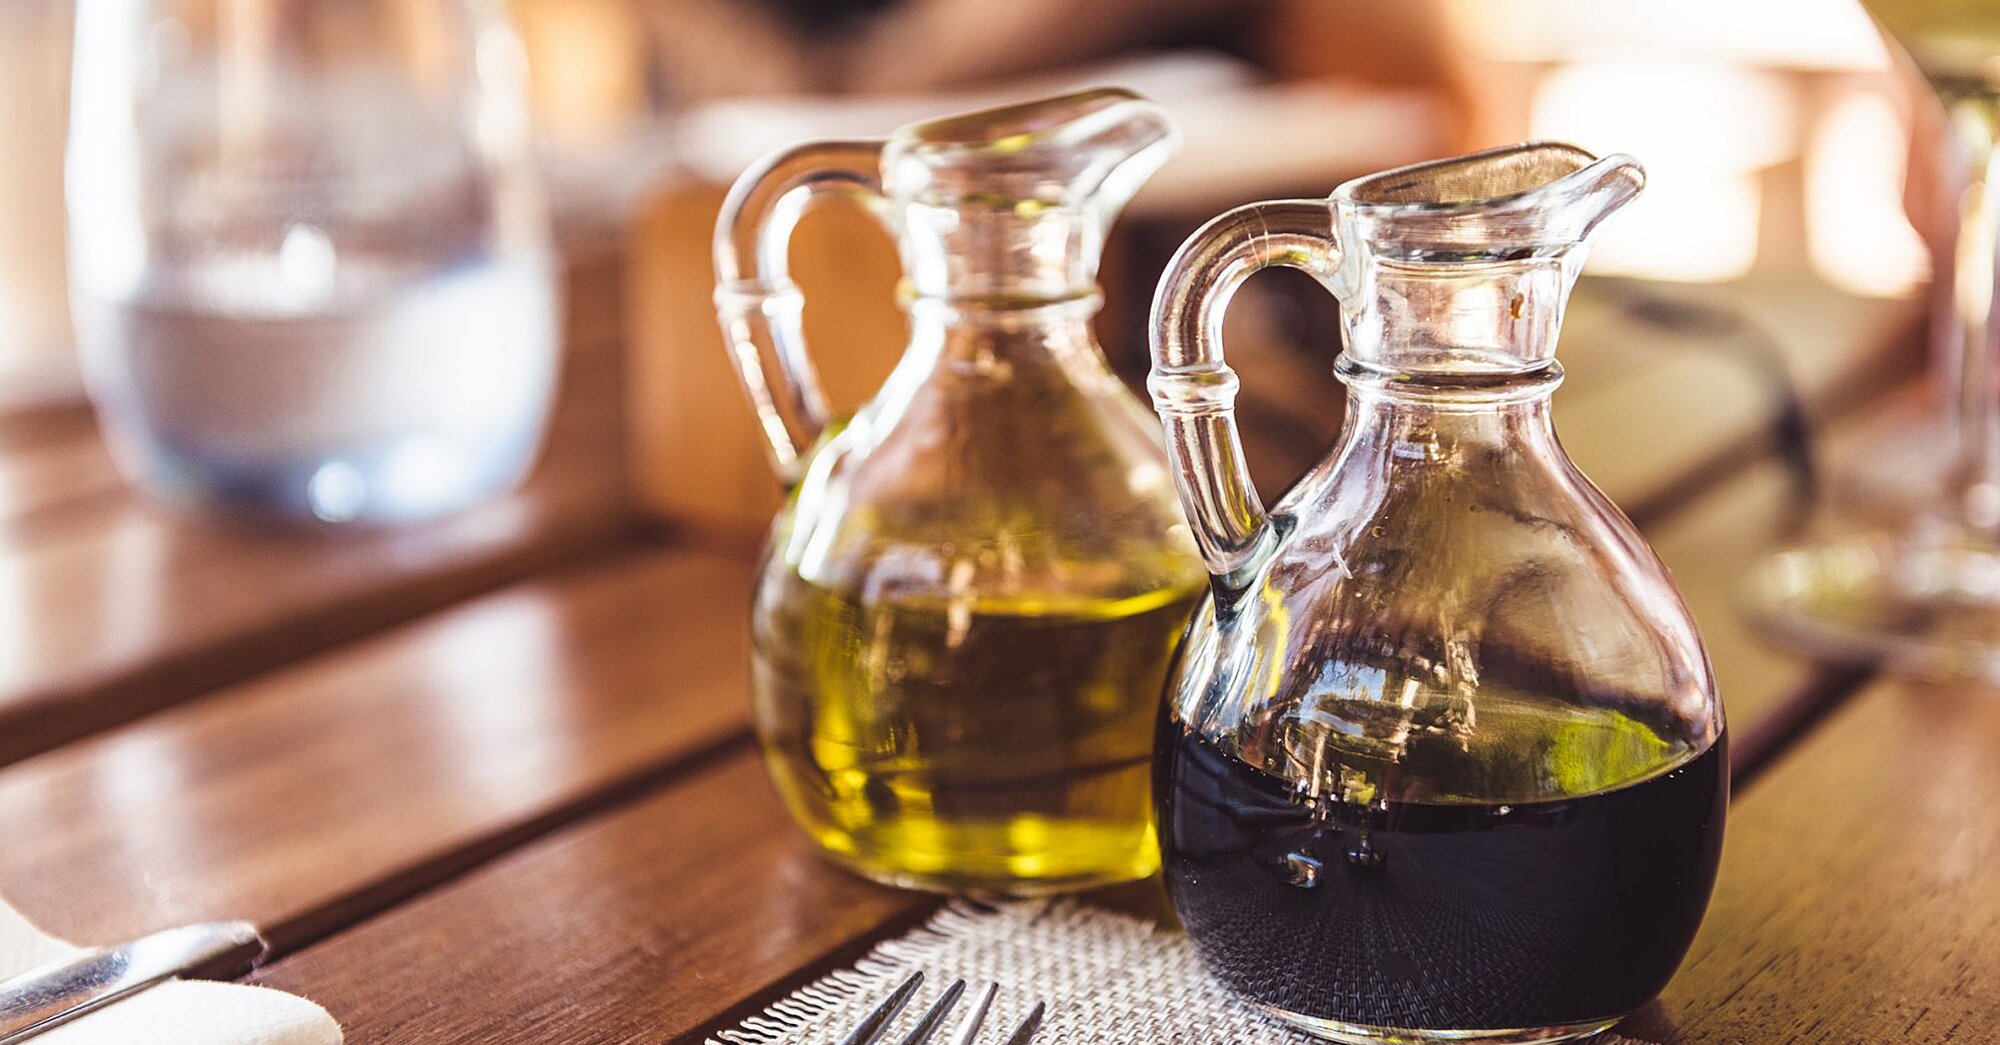 Formas creativas de usar el aceite y el vinagre - además de los aderezos para ensaladas